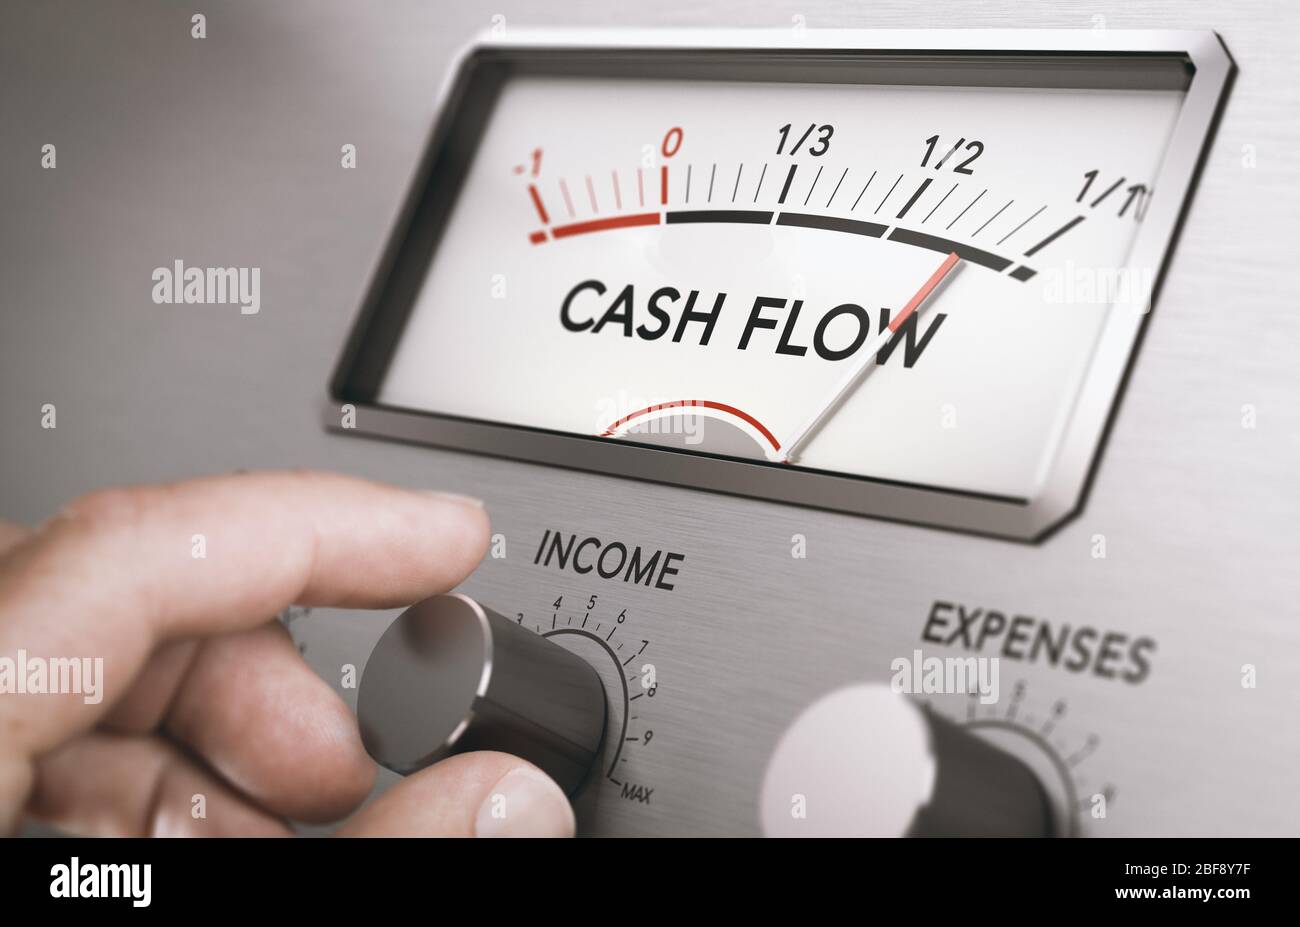 Mann dreht Einkommen Knopf, um Cash Flow Betrag zu erhöhen. Konzept der guten Verwaltung von Liquiditäten in einem Unternehmen. Zusammengesetztes Bild zwischen einem Hand-Fotograp Stockfoto